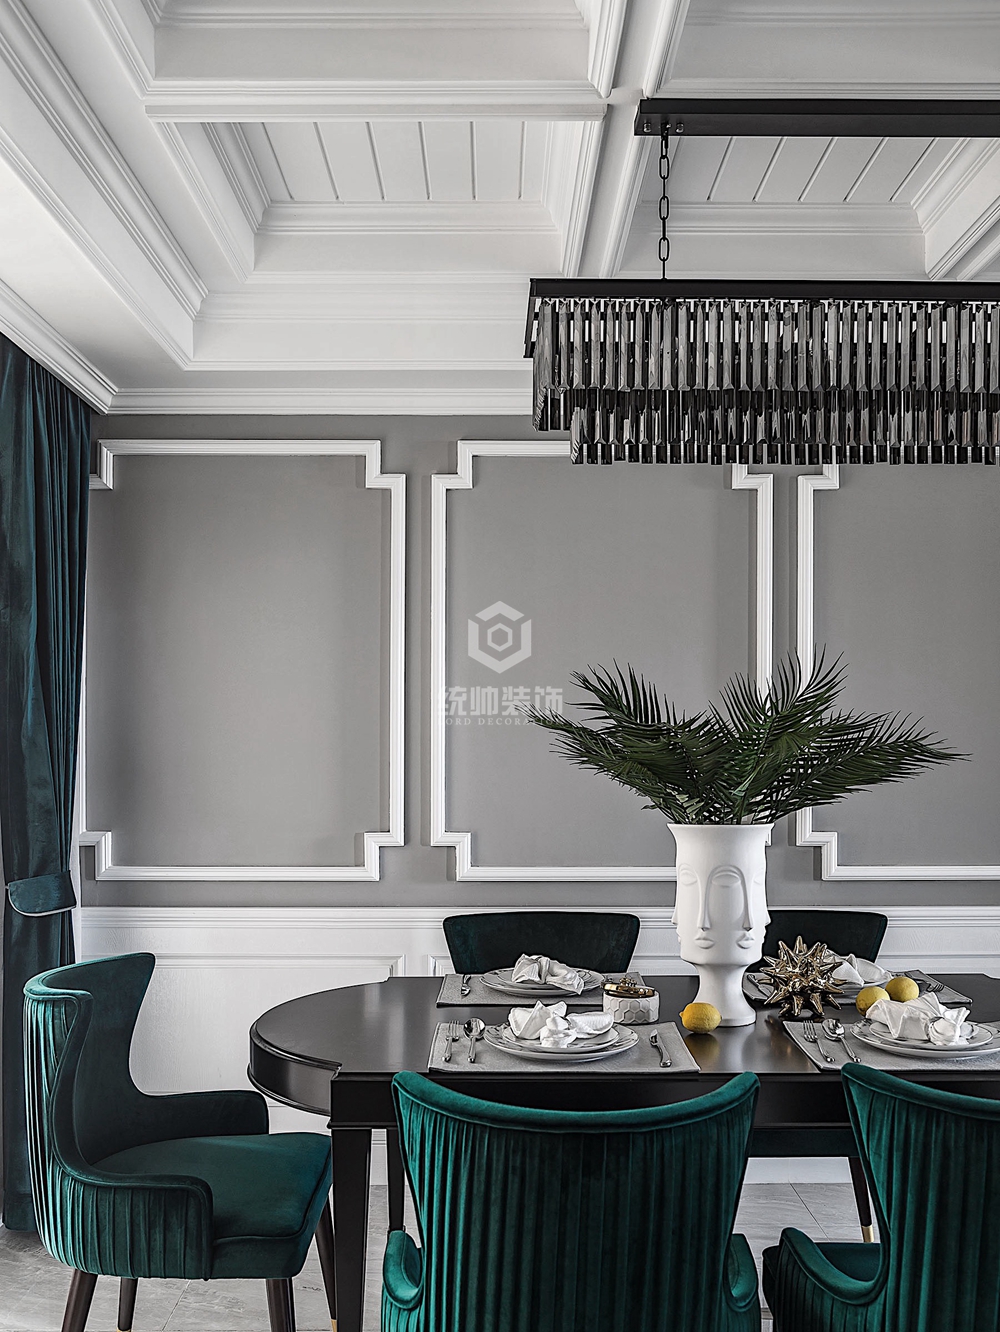 浦东新区祝安苑82平方美式风格公寓餐厅装修效果图